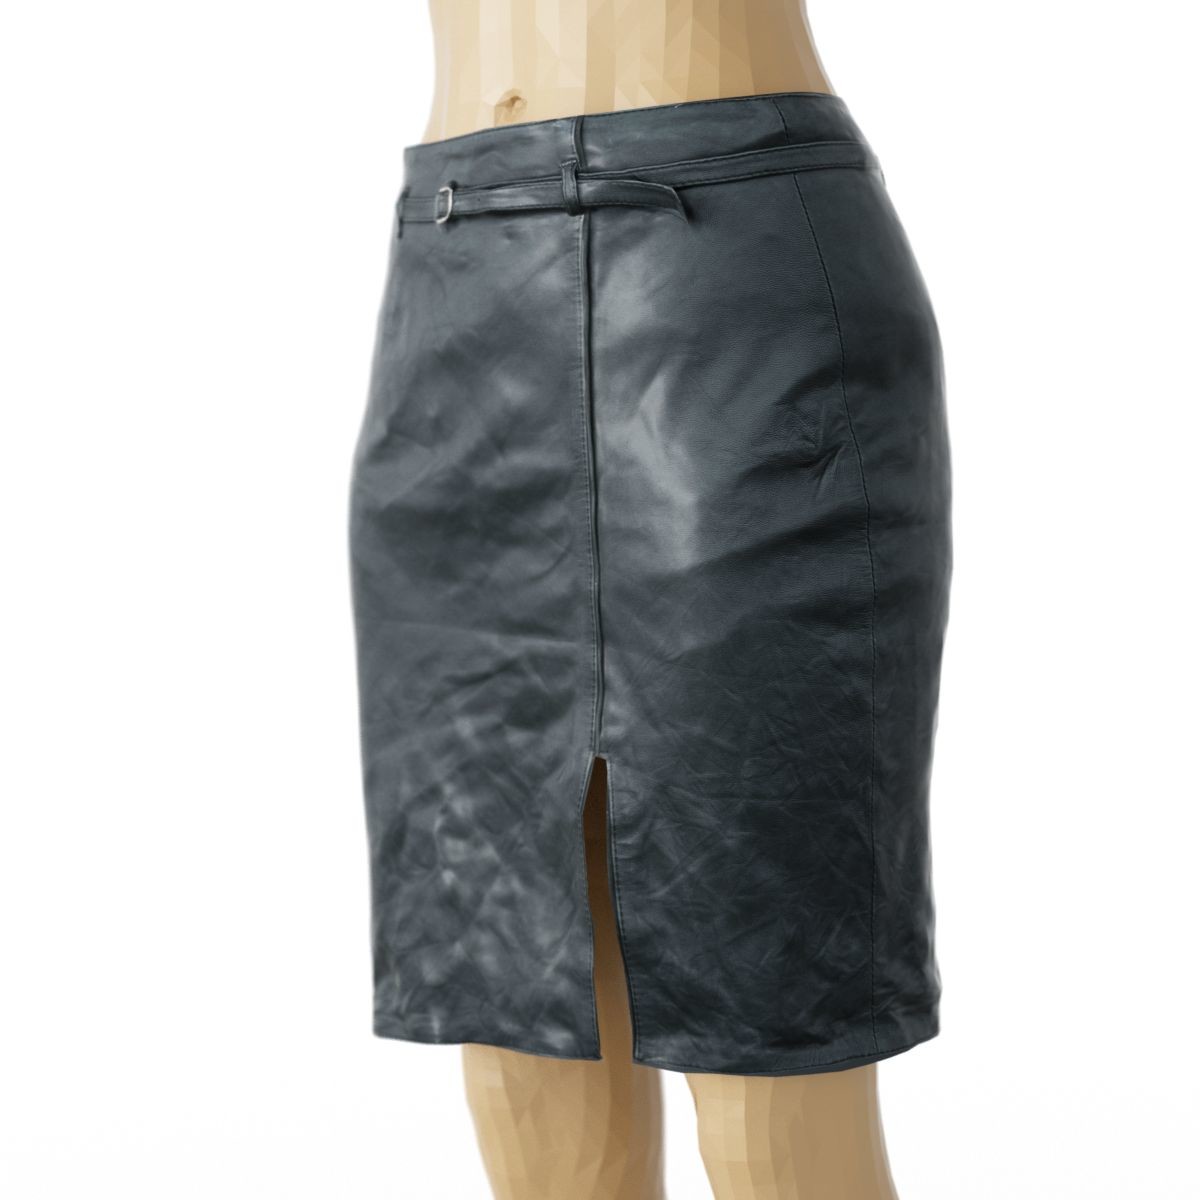 ArtStation - Vintage Skirt Black Leather | Resources